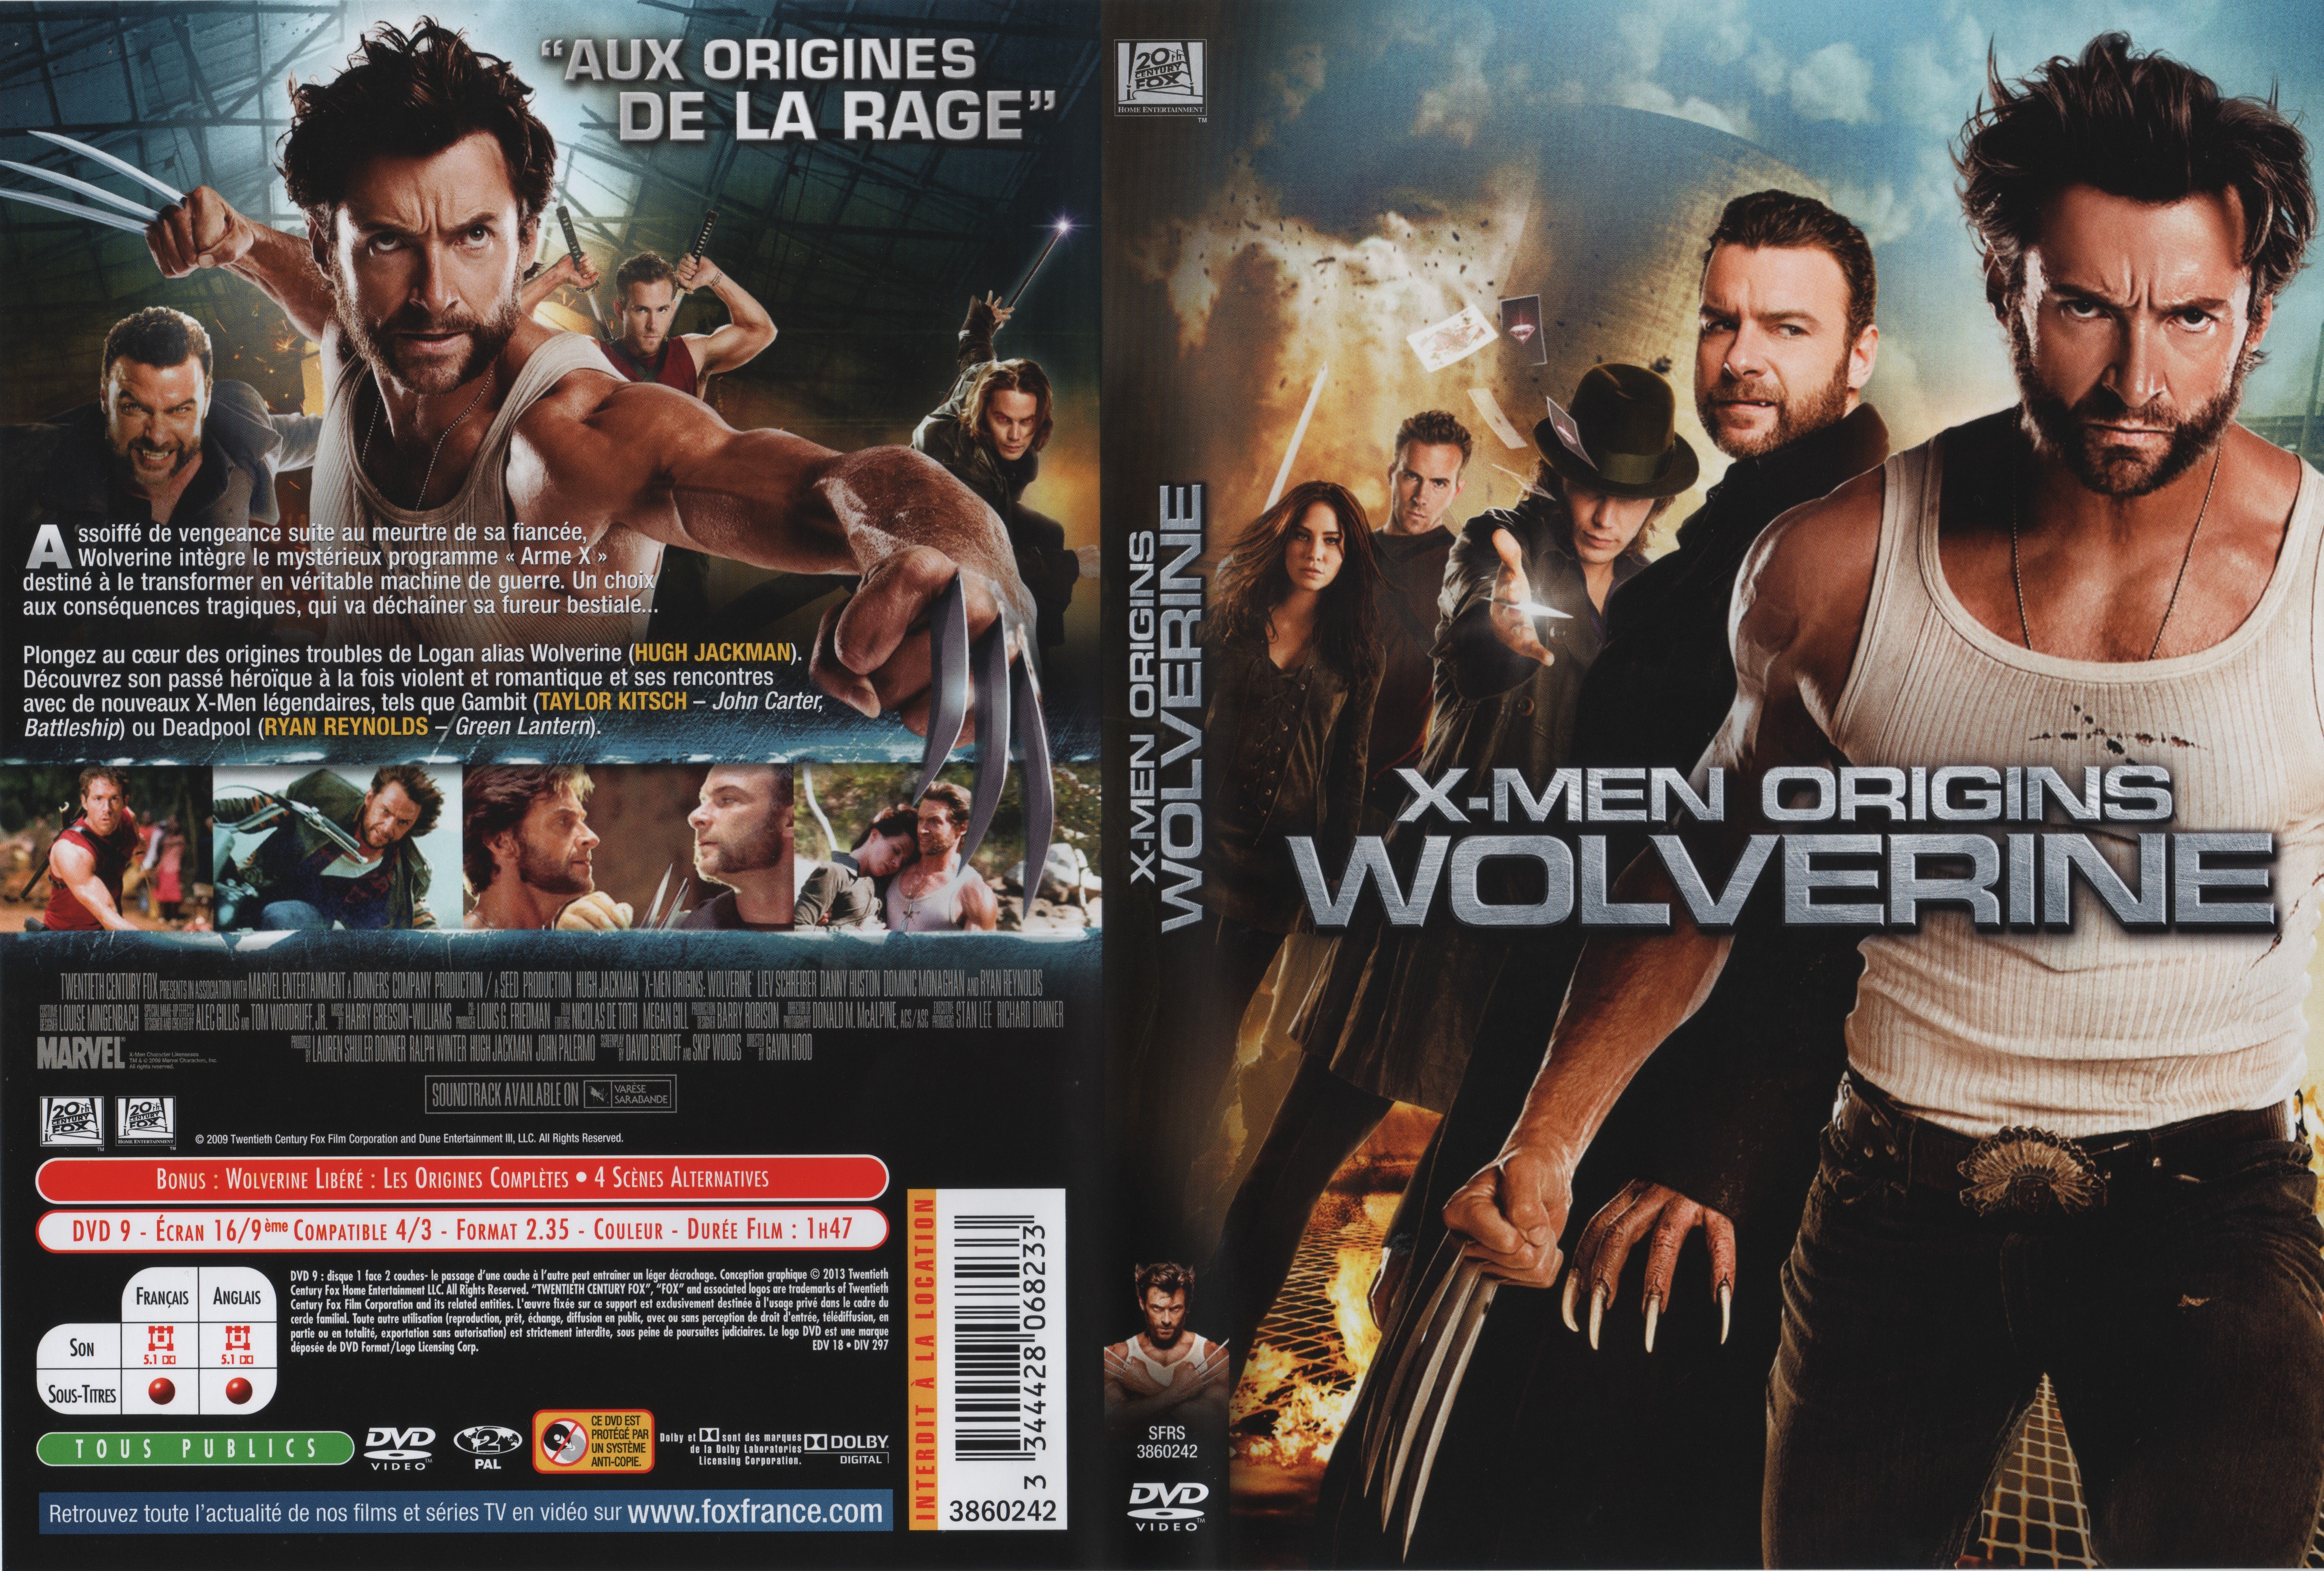 Jaquette DVD X-Men Origins Wolverine v4